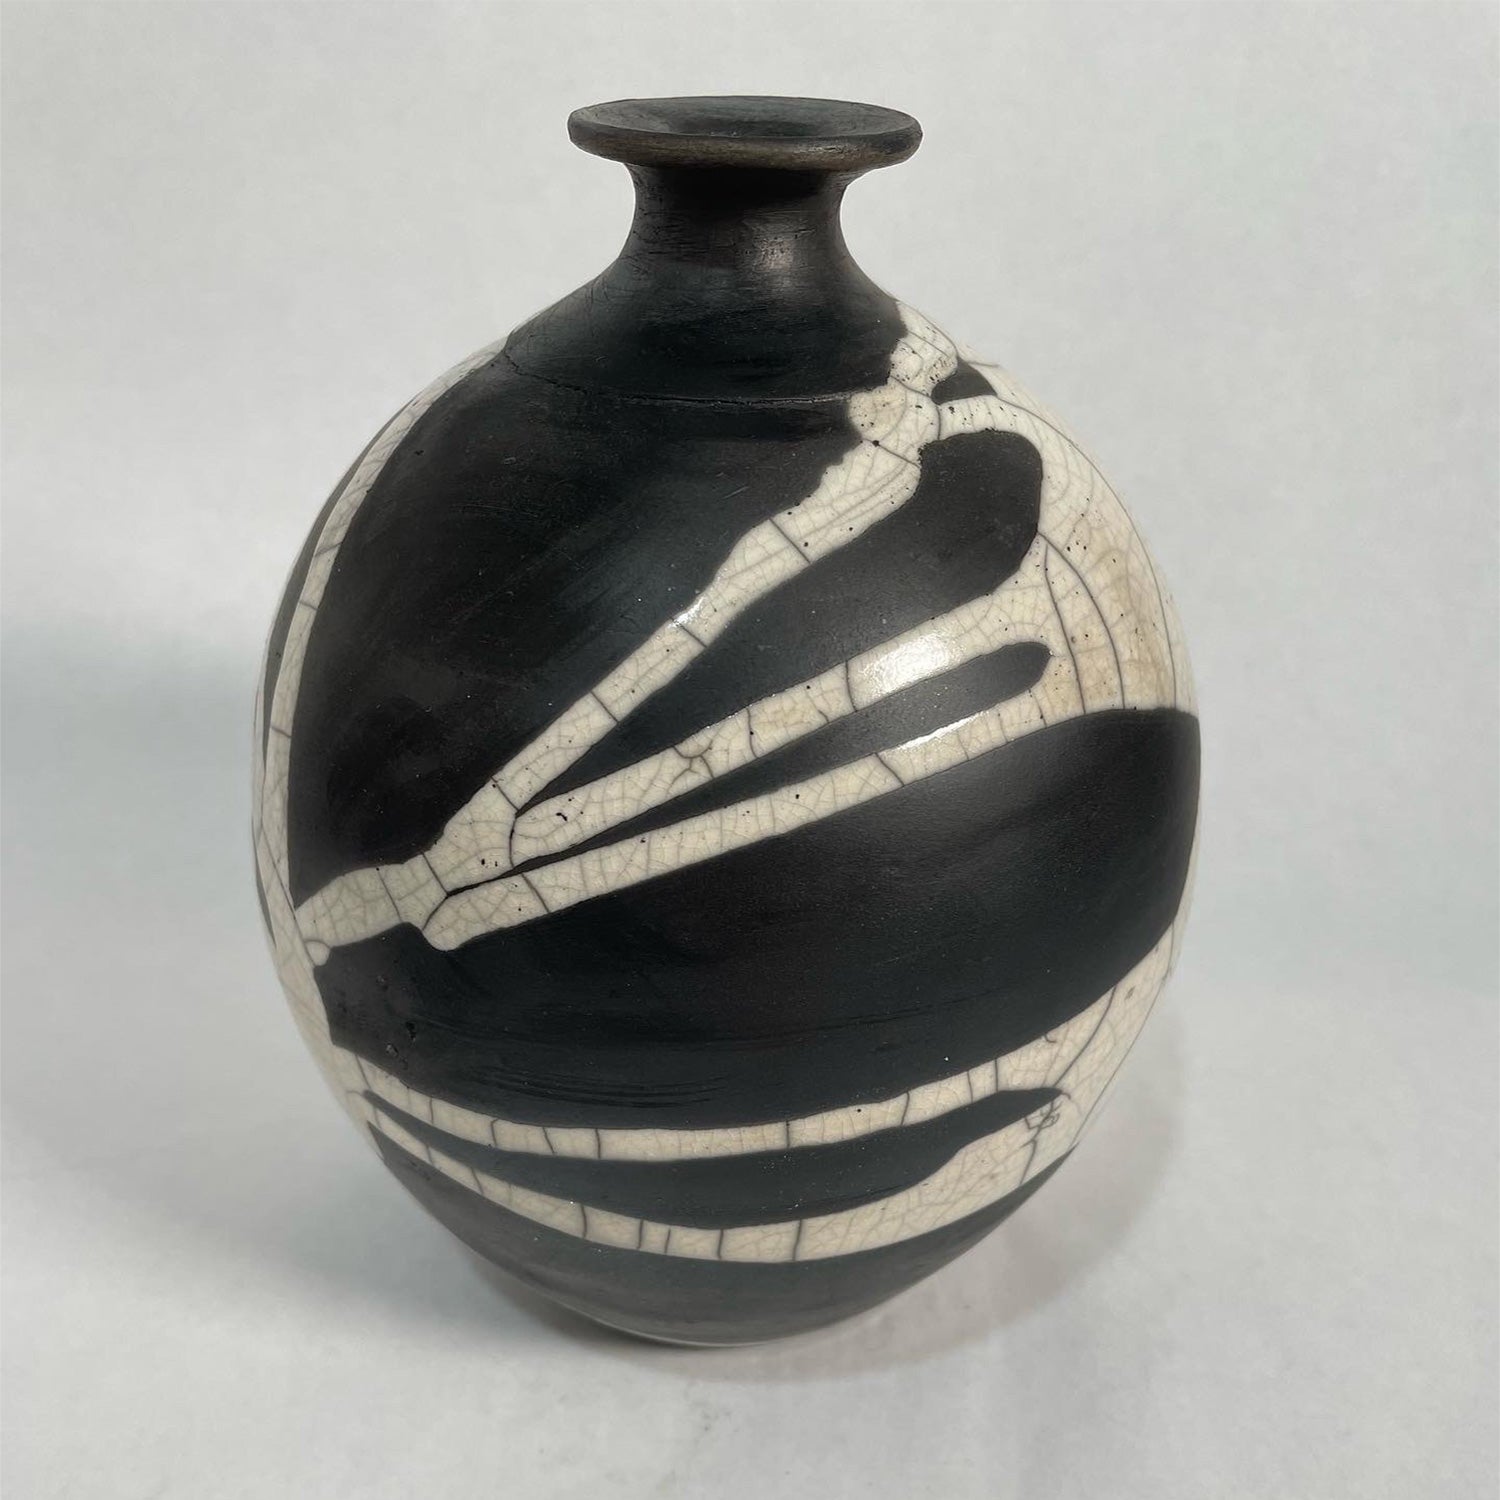 Mary Goh - White Crackle Bone Vase, 7" x 5" x 5"